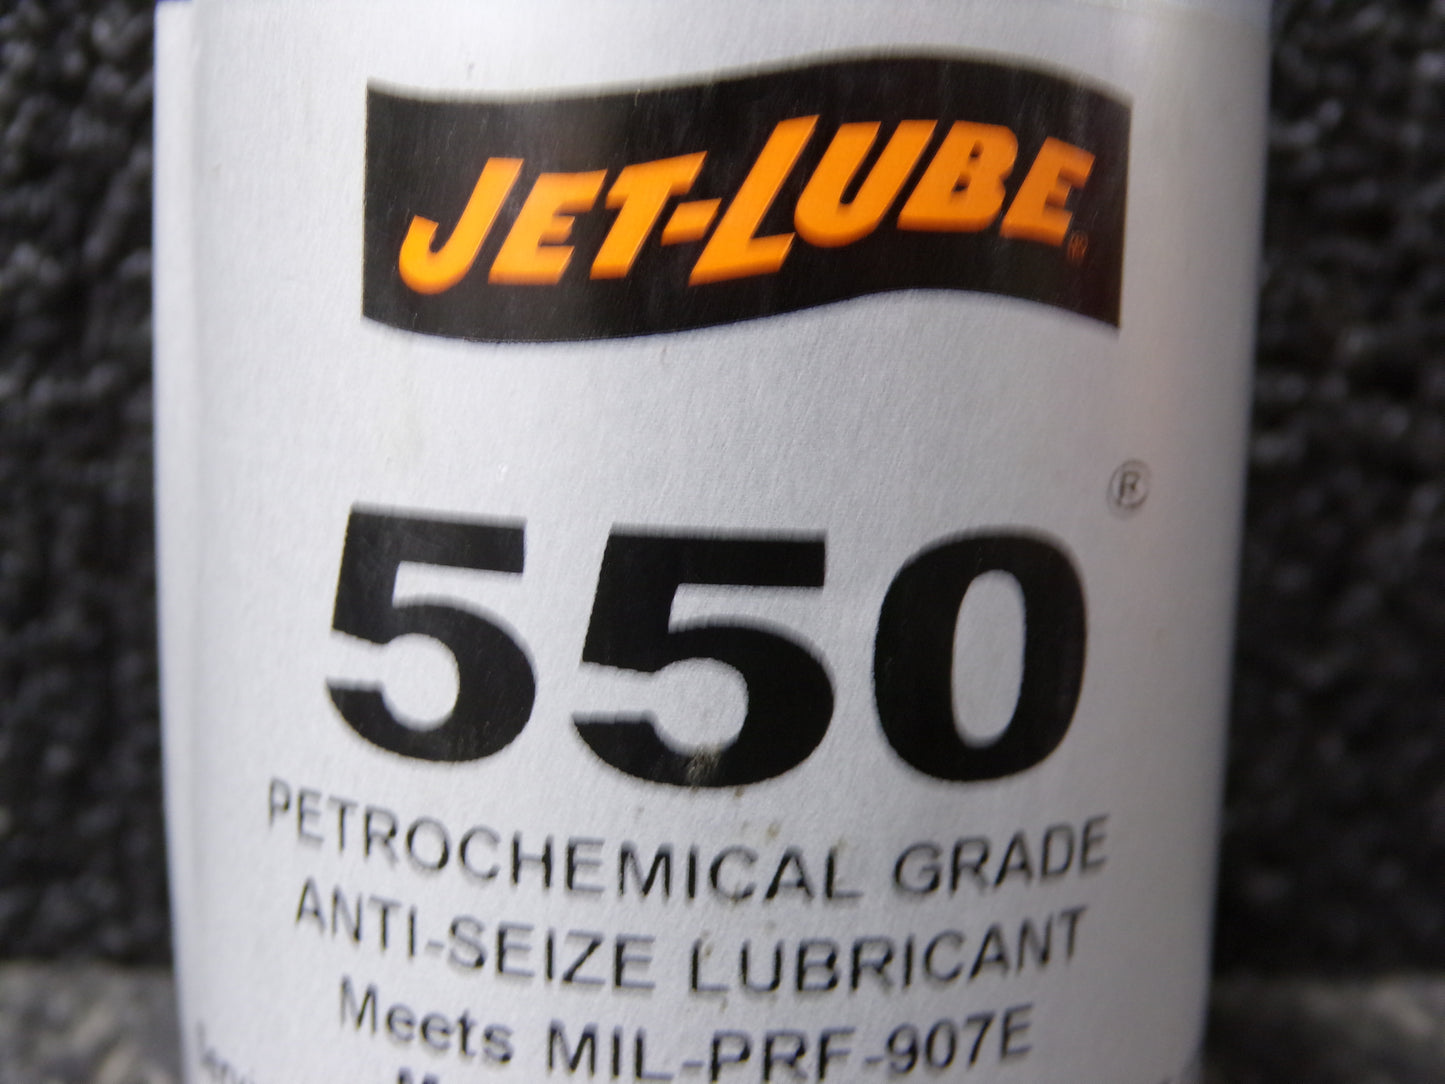 JET-LUBE General Purpose Anti-Seize, 0.25 lb, Brush-Top Can, Non-Metallic, Paste, 550, -65°F, 2,400 °F (CR00406-X03)